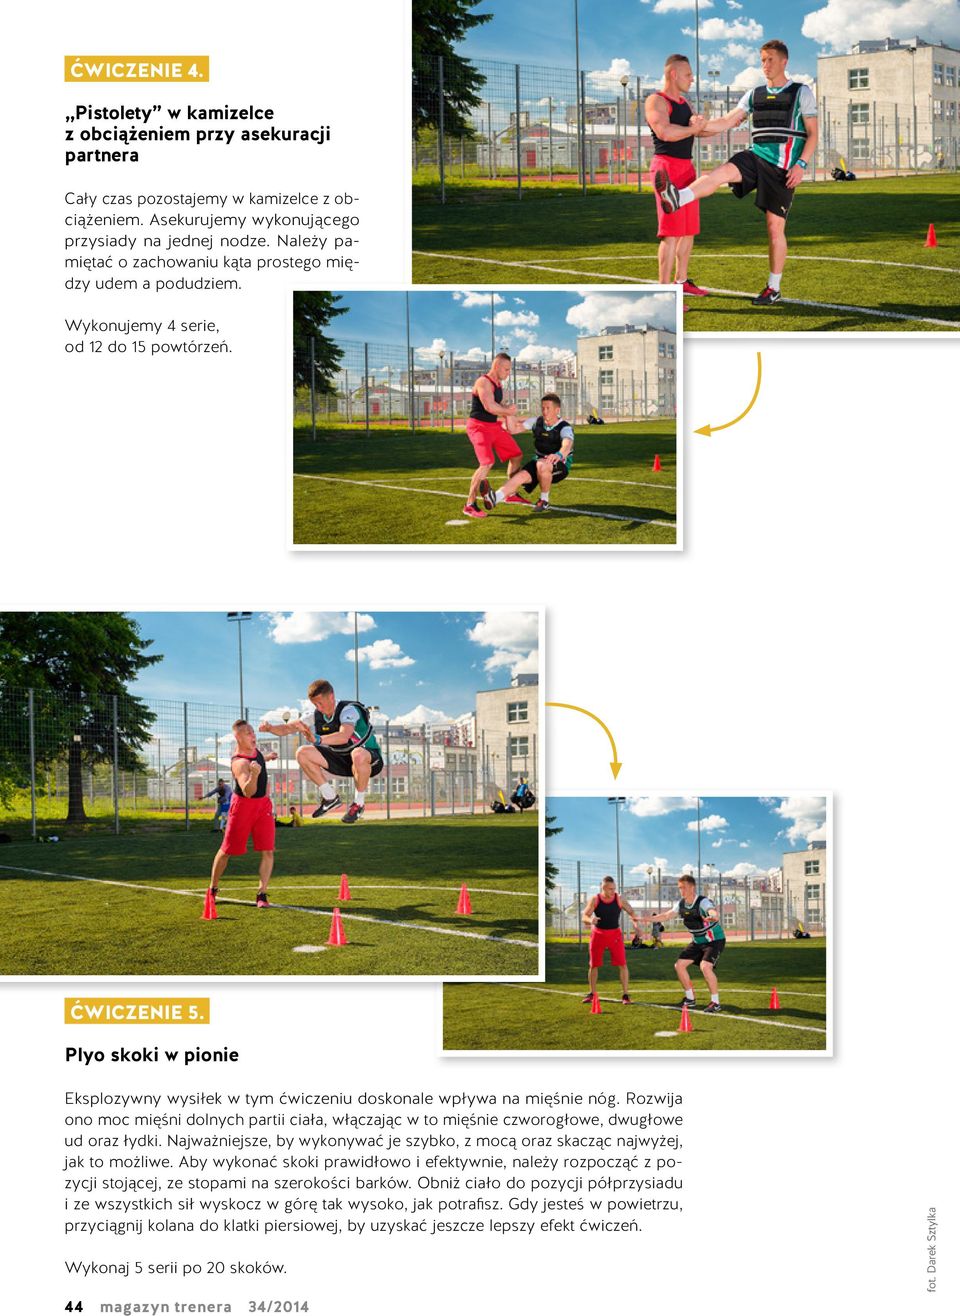 Plyo skoki w pionie Eksplozywny wysiłek w tym ćwiczeniu doskonale wpływa na mięśnie nóg. Rozwija ono moc mięśni dolnych partii ciała, włączając w to mięśnie czworogłowe, dwugłowe ud oraz łydki.